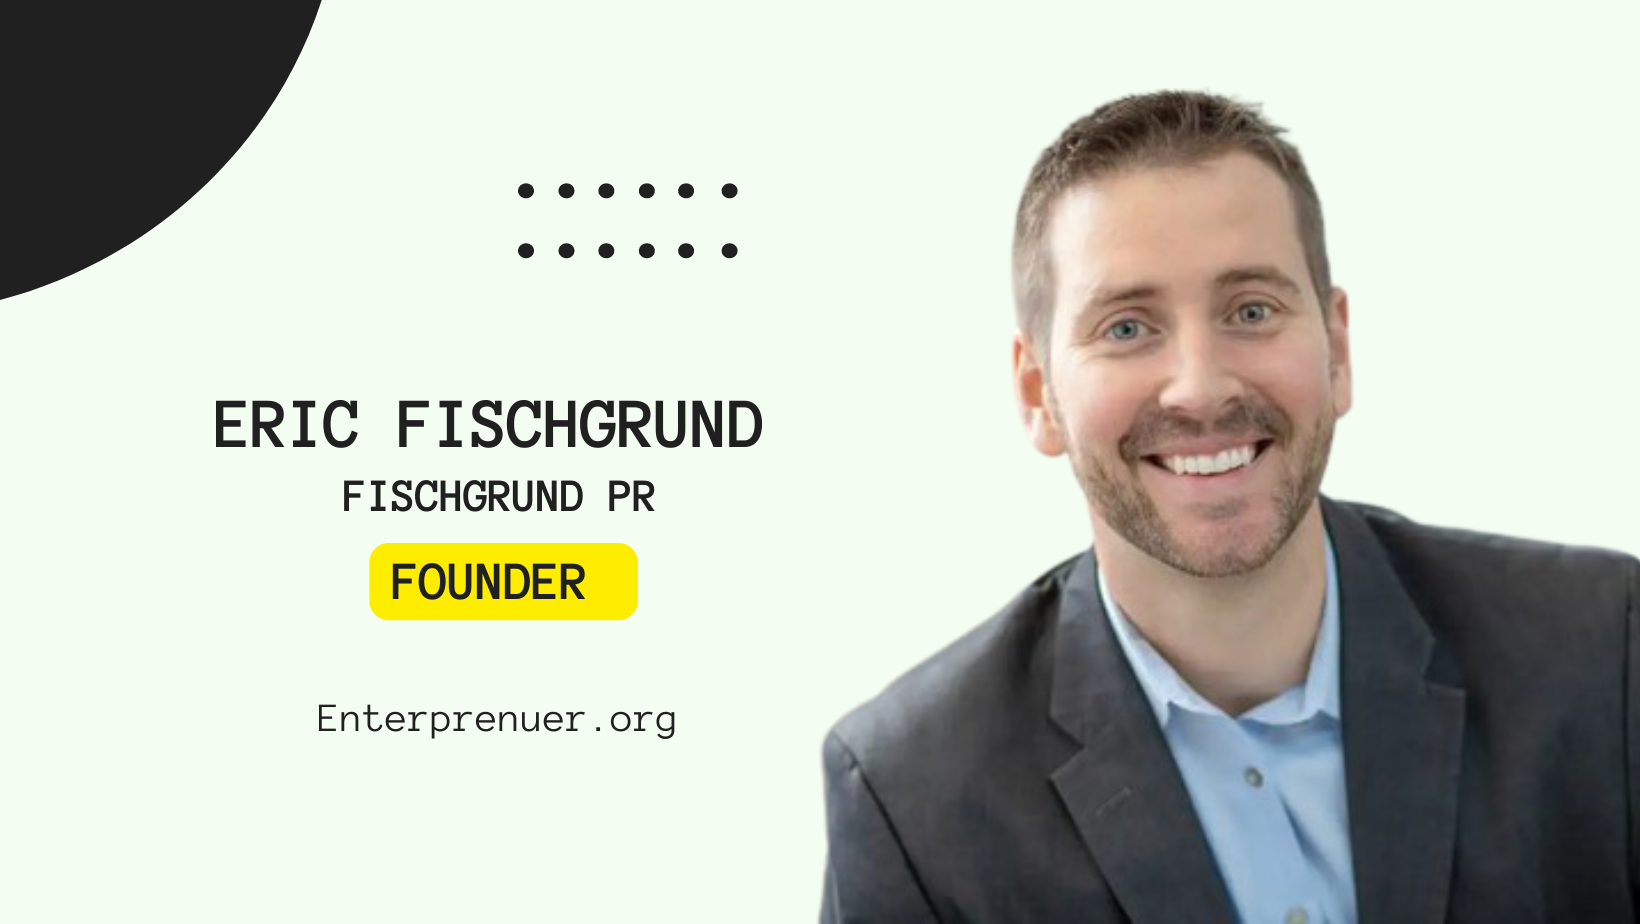 Eric Fischgrund Founder of Fischgrund PR